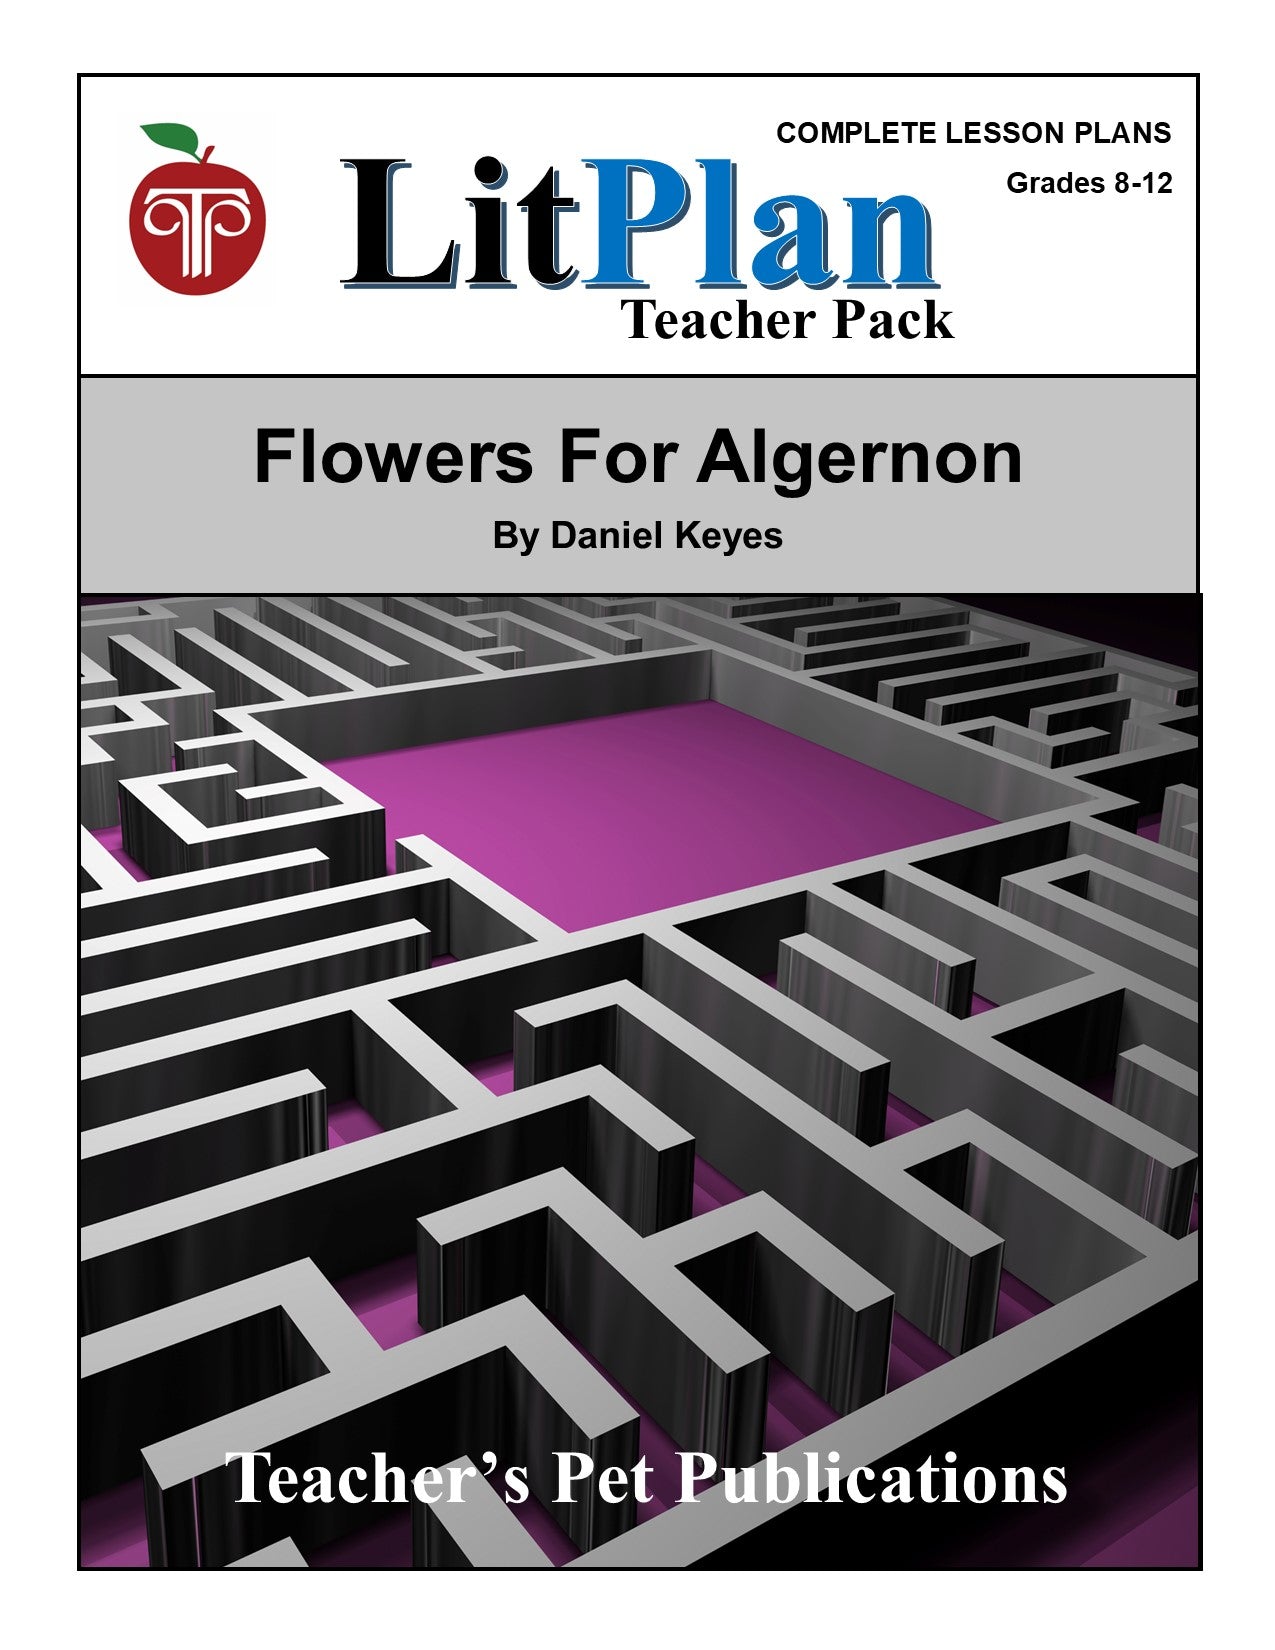 Flowers for Algernon: LitPlan Teacher Pack Grades 8-12